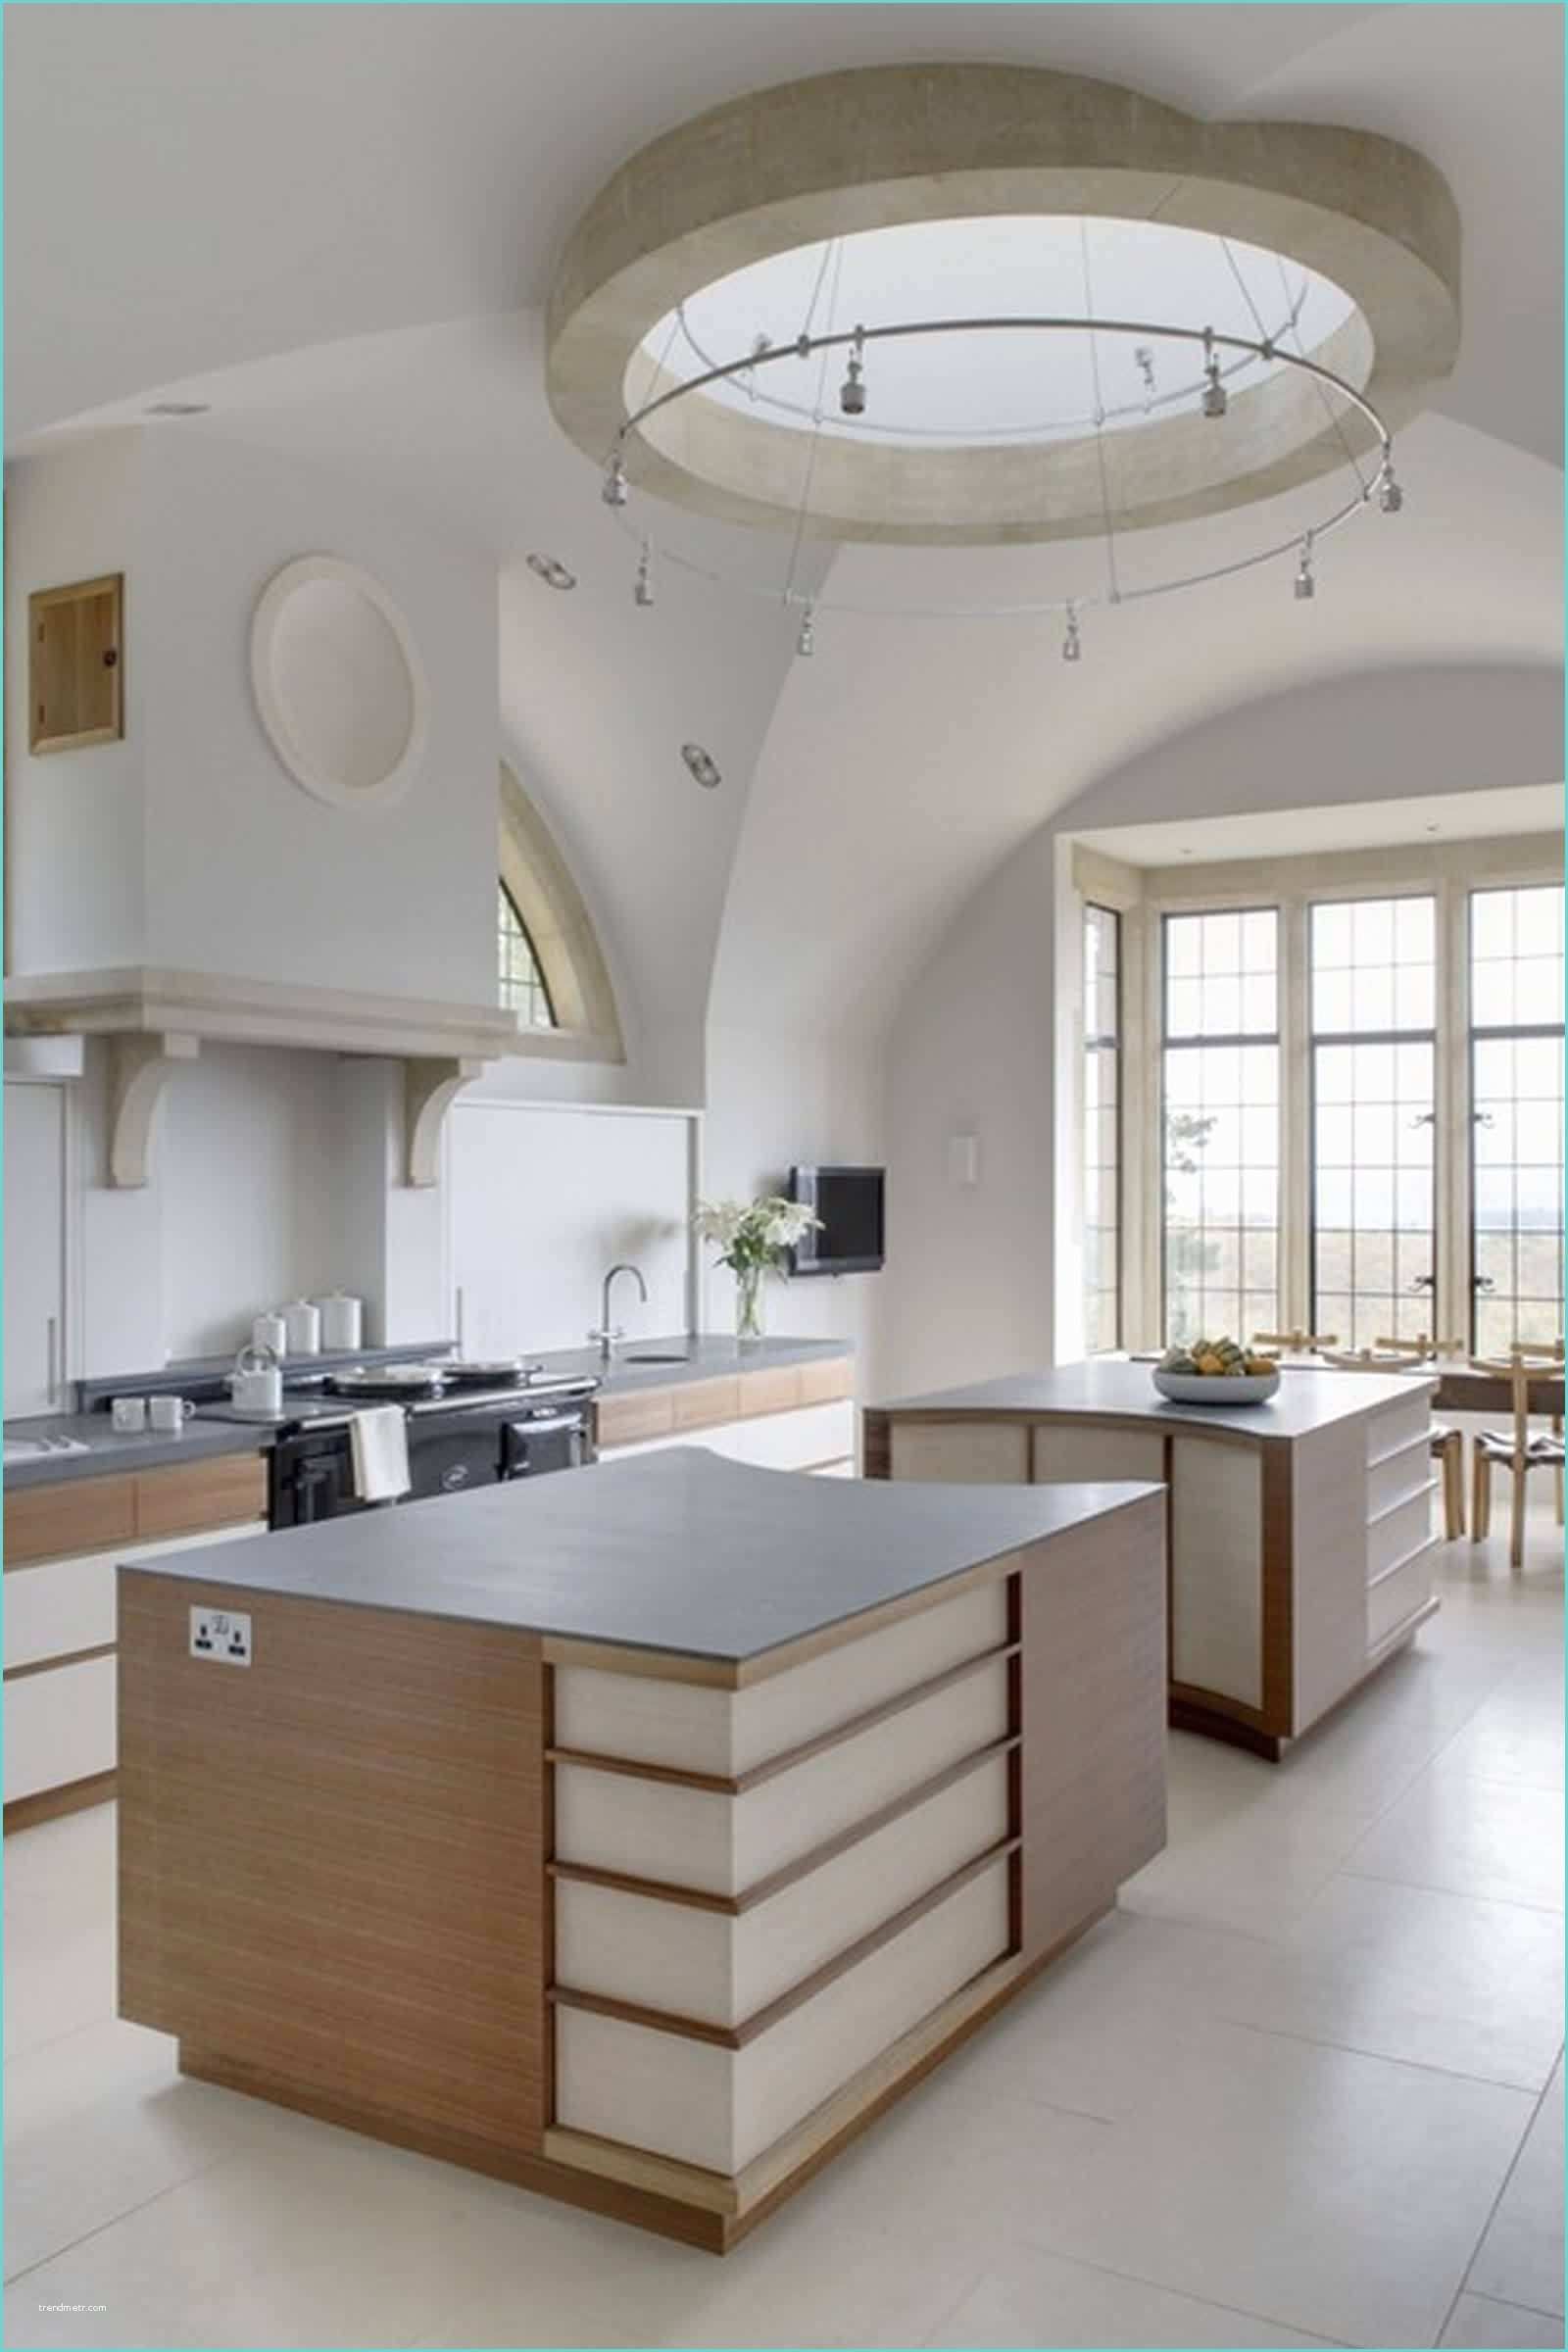 Mattonelle Per Cucina Classica Mattonelle X Cucina Home Design Ideas Home Design Ideas